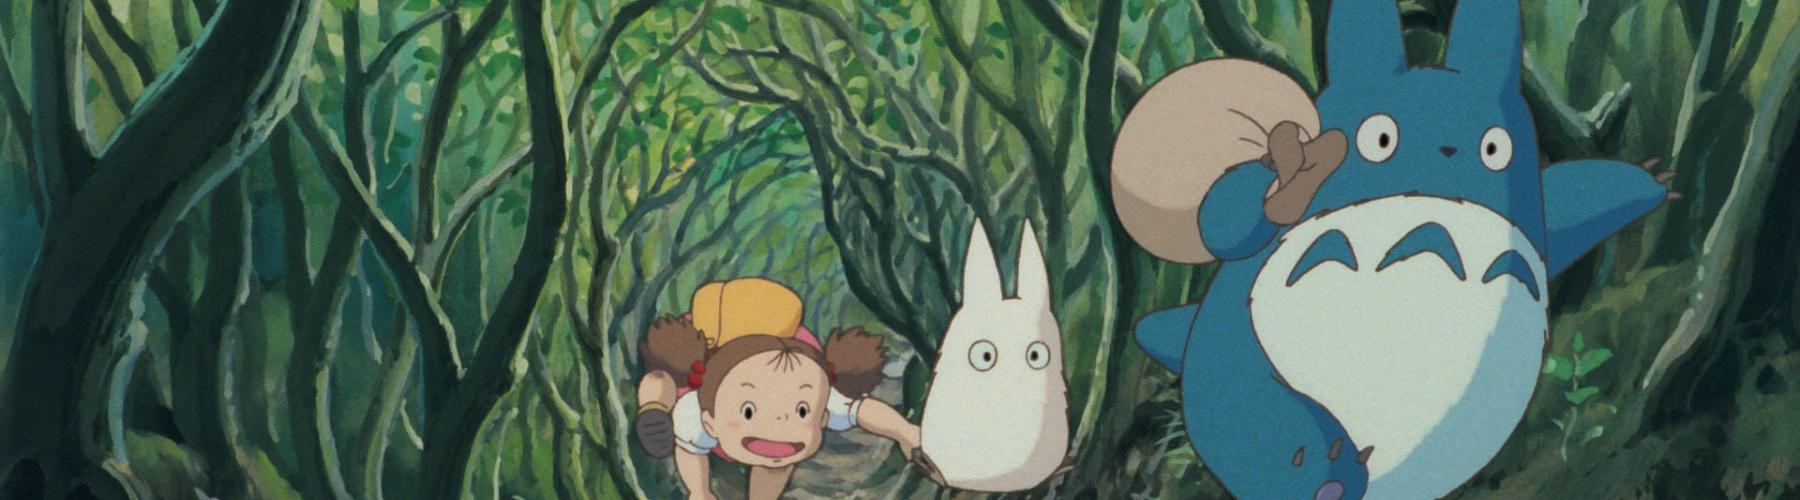 Personnages du film Mon voisin Totoro courant dans la forêt 